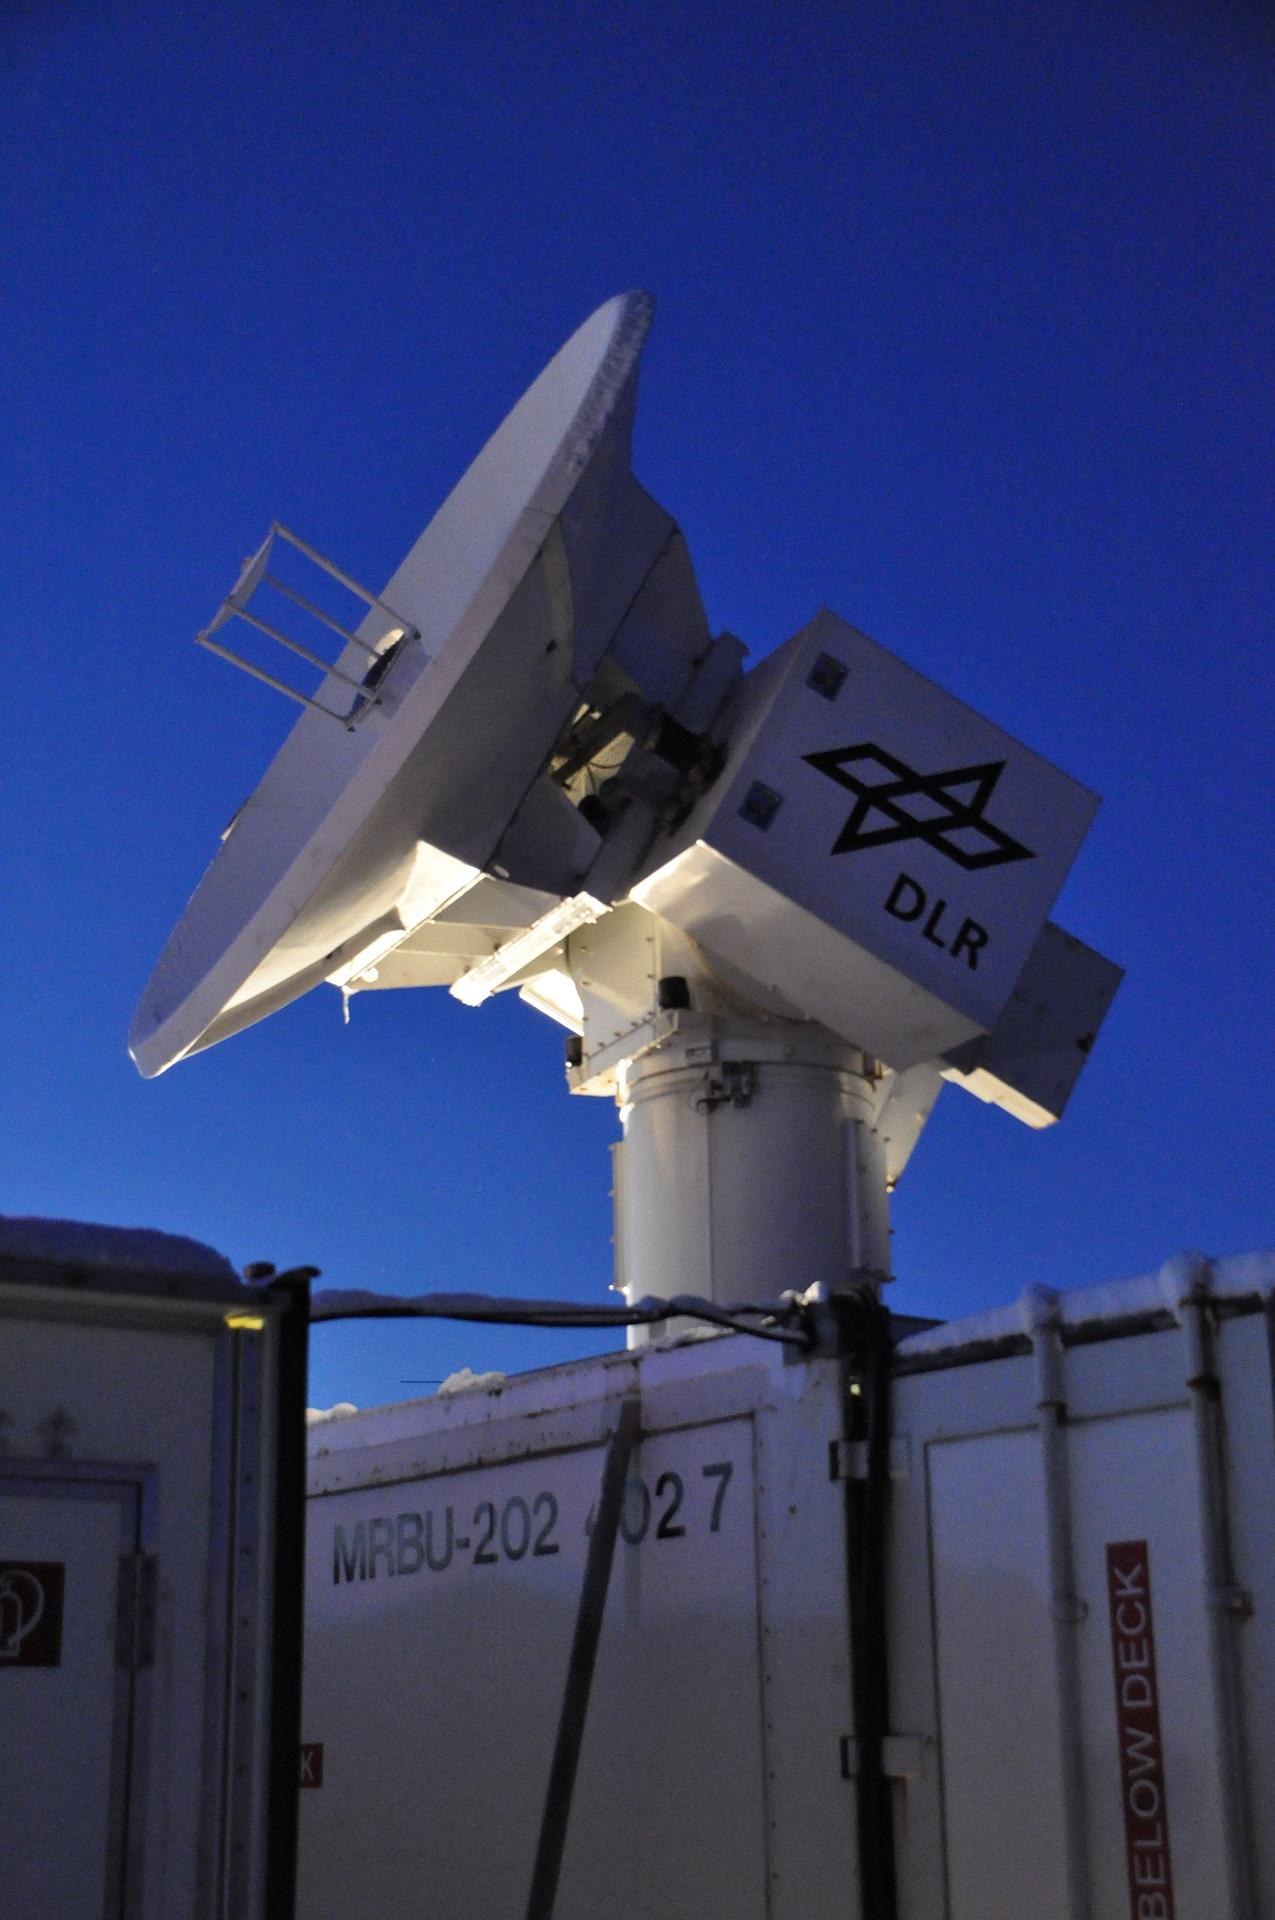 RIR-774C Radar Antenne in der Abenddämmerung